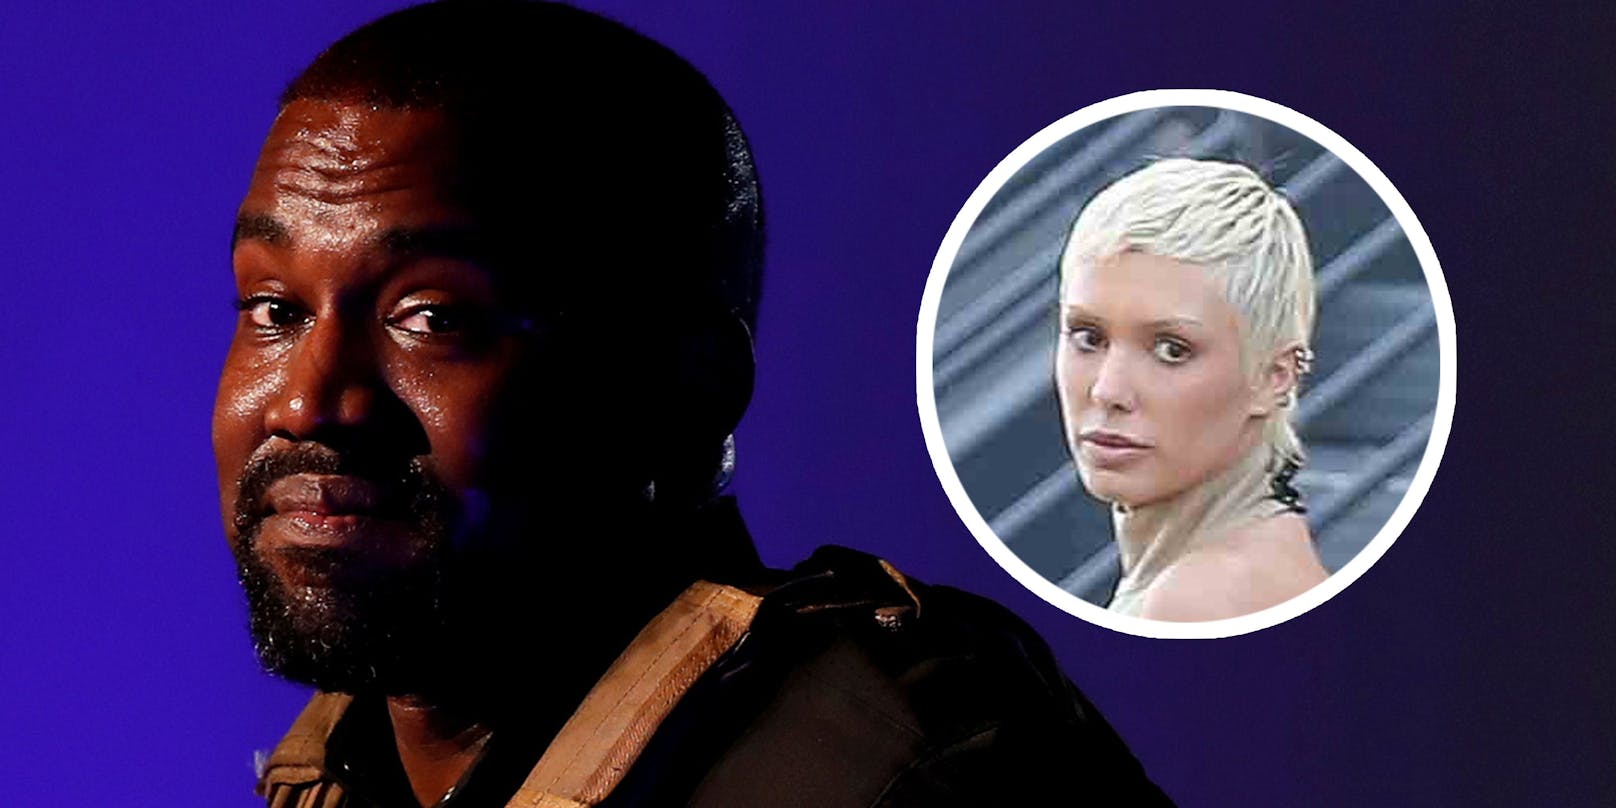 Eine Frau an Kanye Wests Seite sorgt mal wieder mit modischen Entscheidungen für Furore.